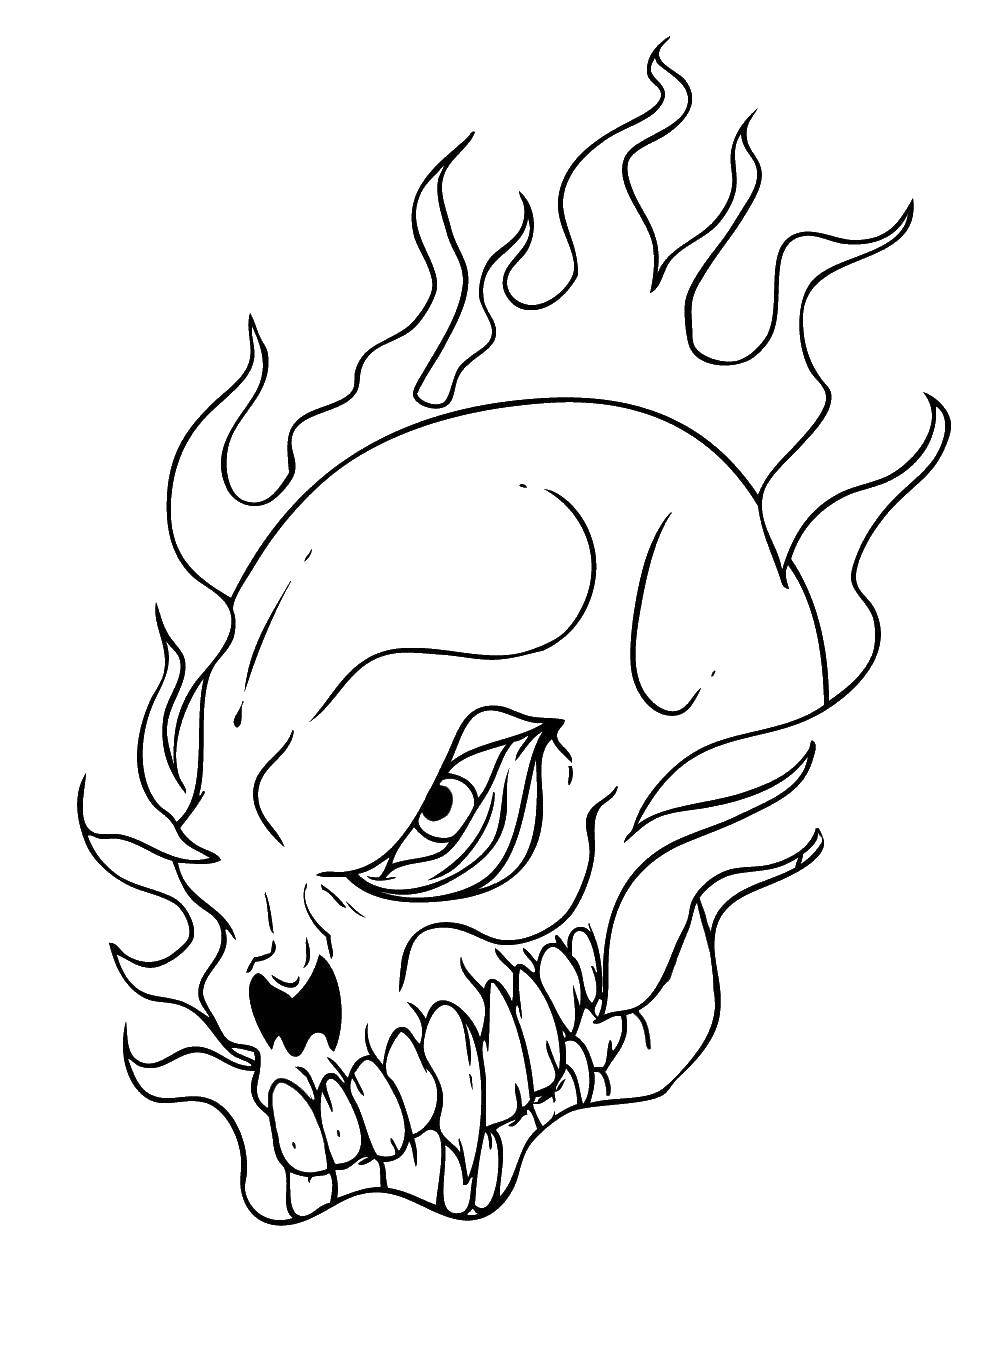 Coloring Skull burning. Category Skull. Tags:  skull.